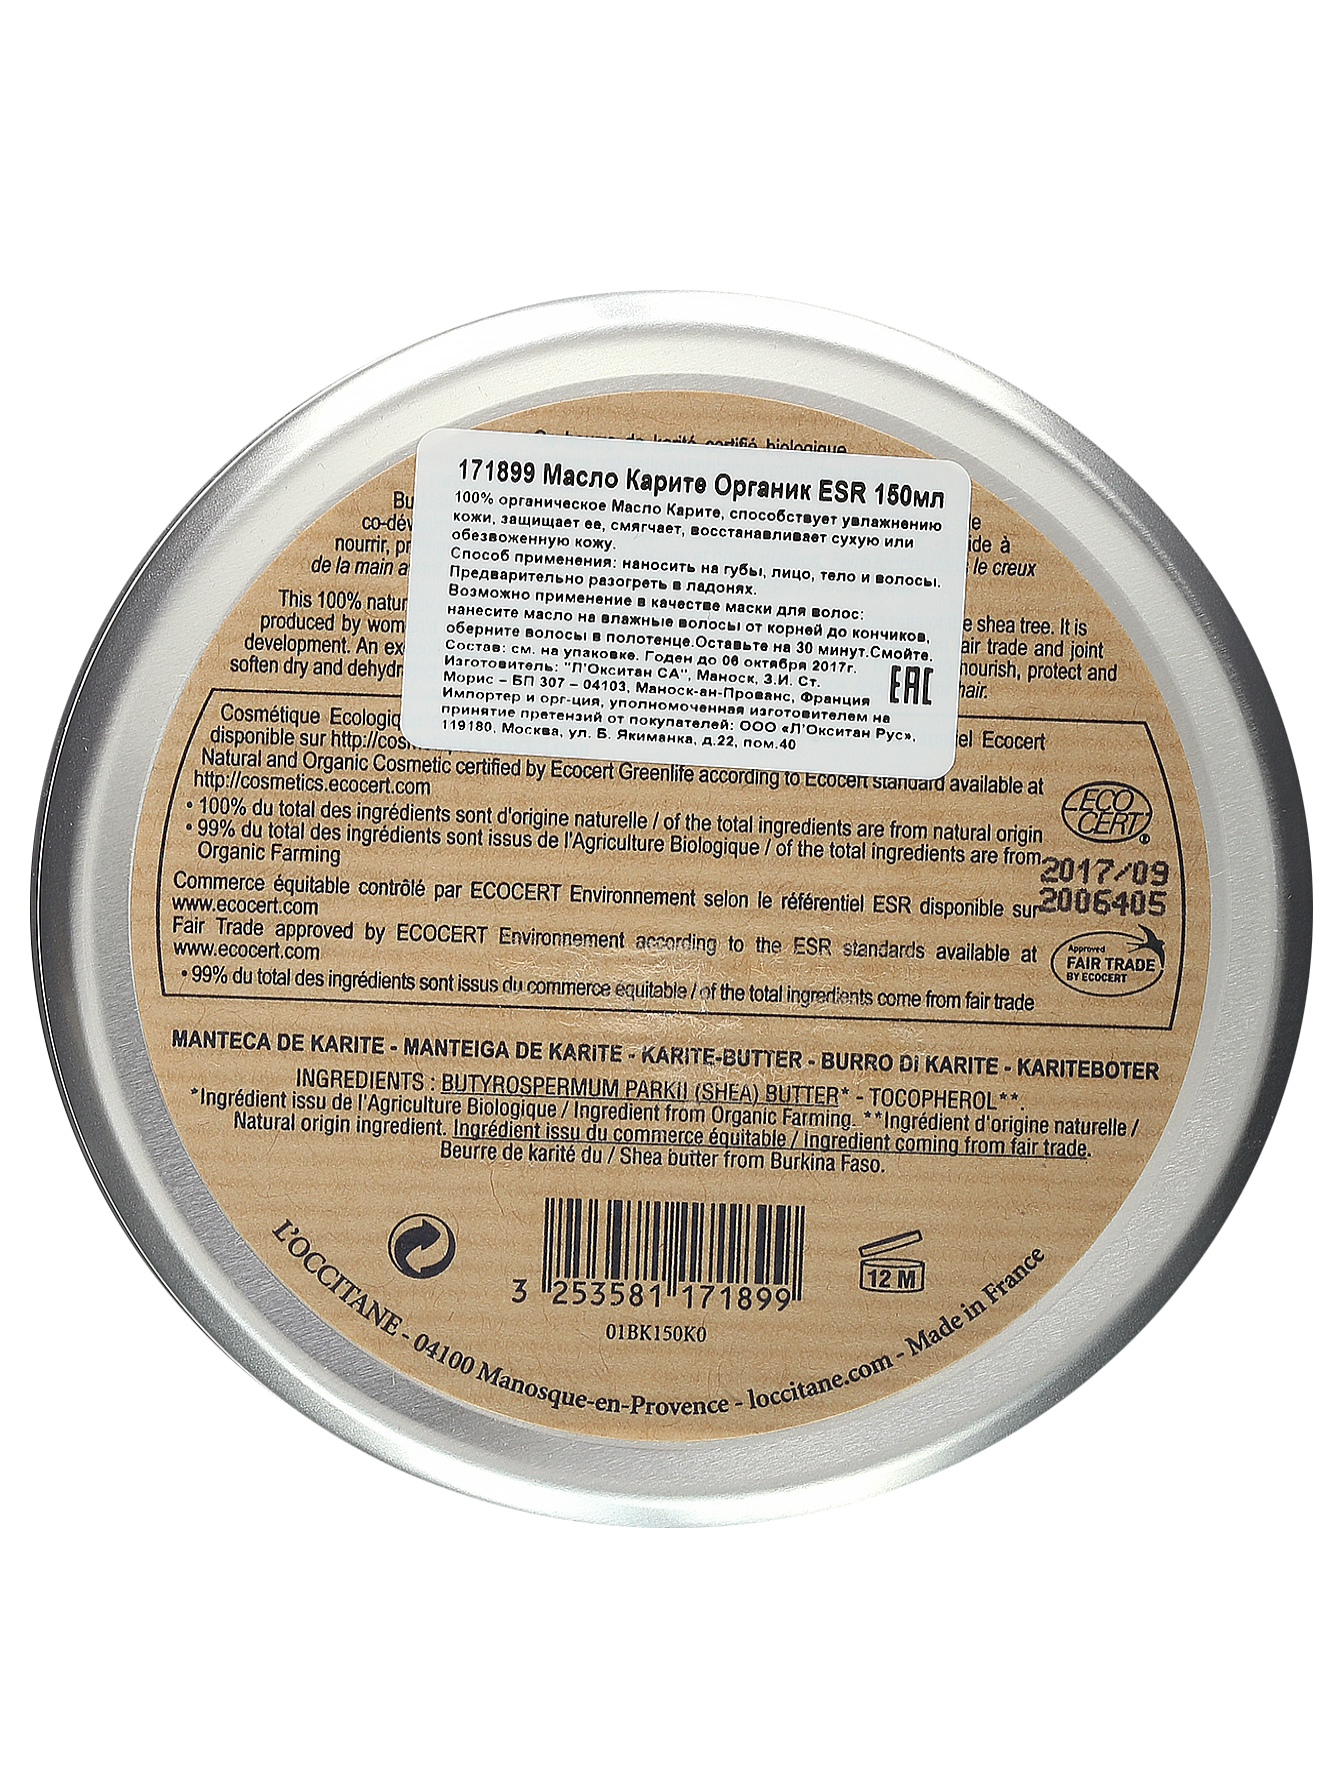 Масло Карите органик ESR - Shea Butter, 150ml - Модель Верх-Низ